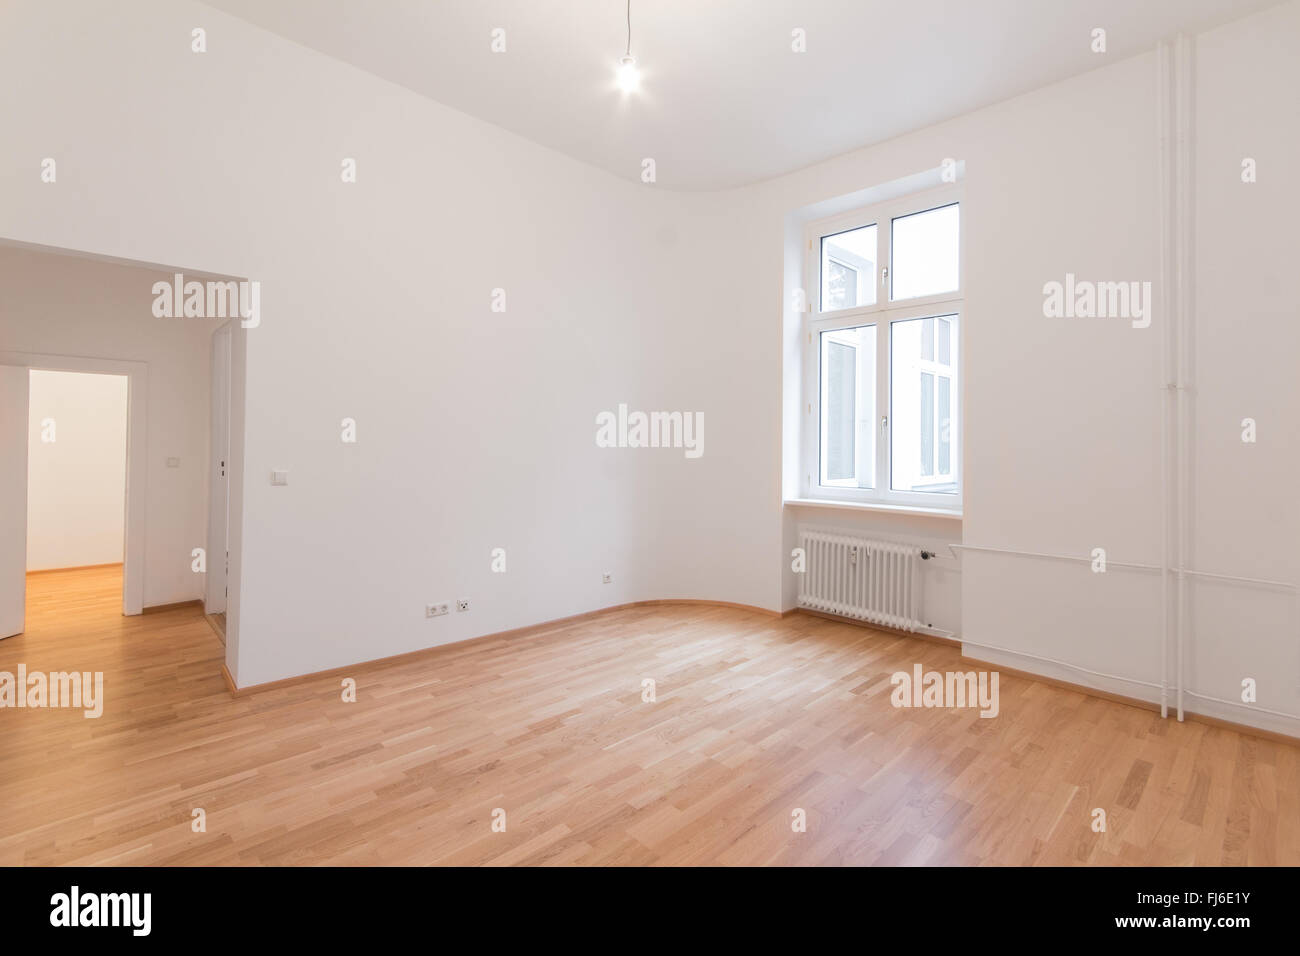 frisch renoviert flach - home / Wohnung - frisch renoviertes Zimmer mit Holzboden Eiche, weiße Wände und Fenster Stockfoto